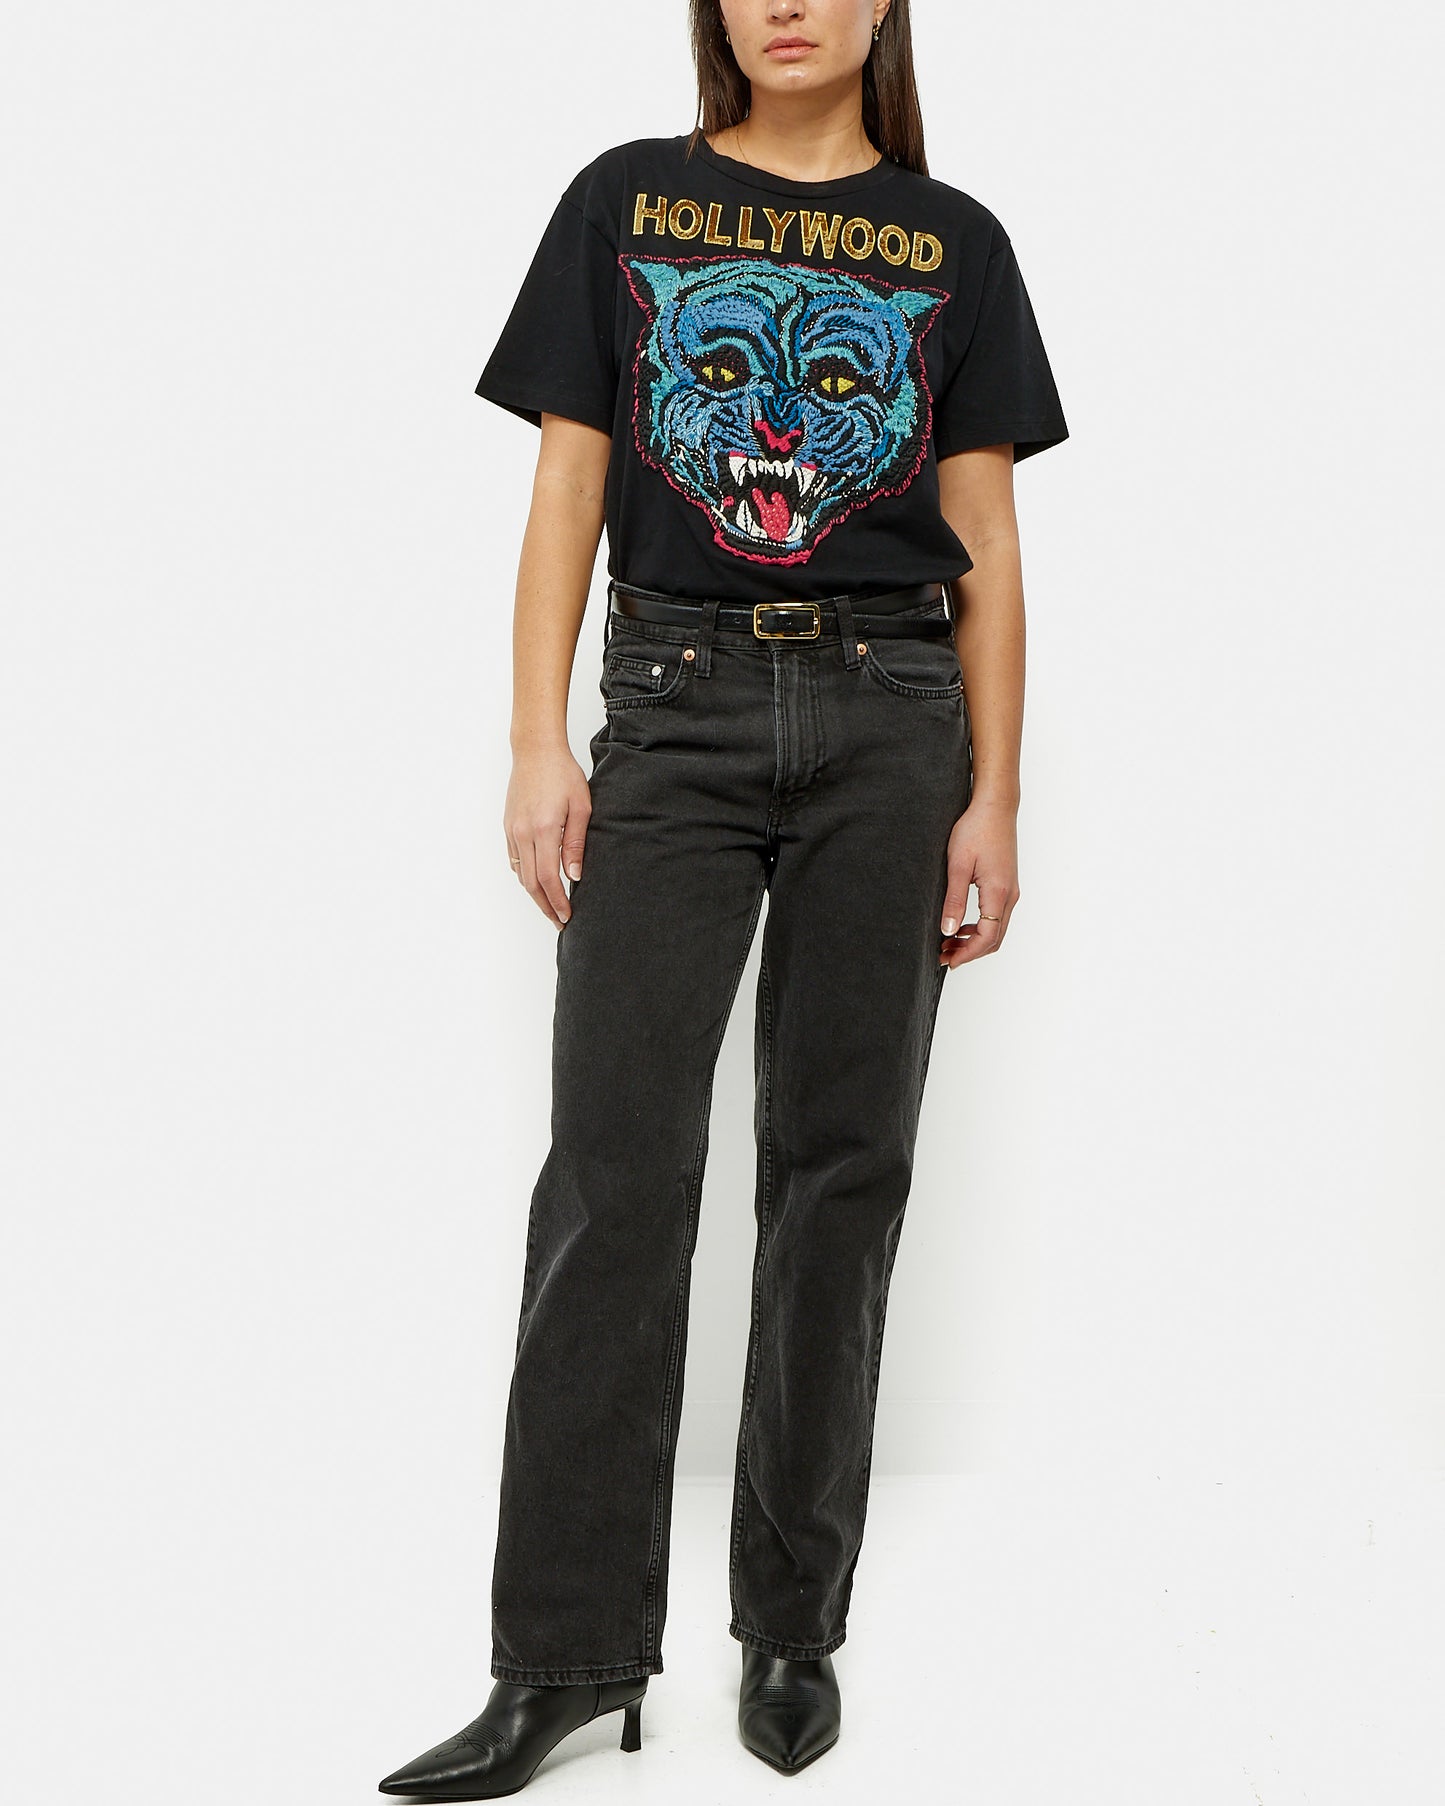 Gucci T-shirt Hollywood noir à sequins dorés - XS